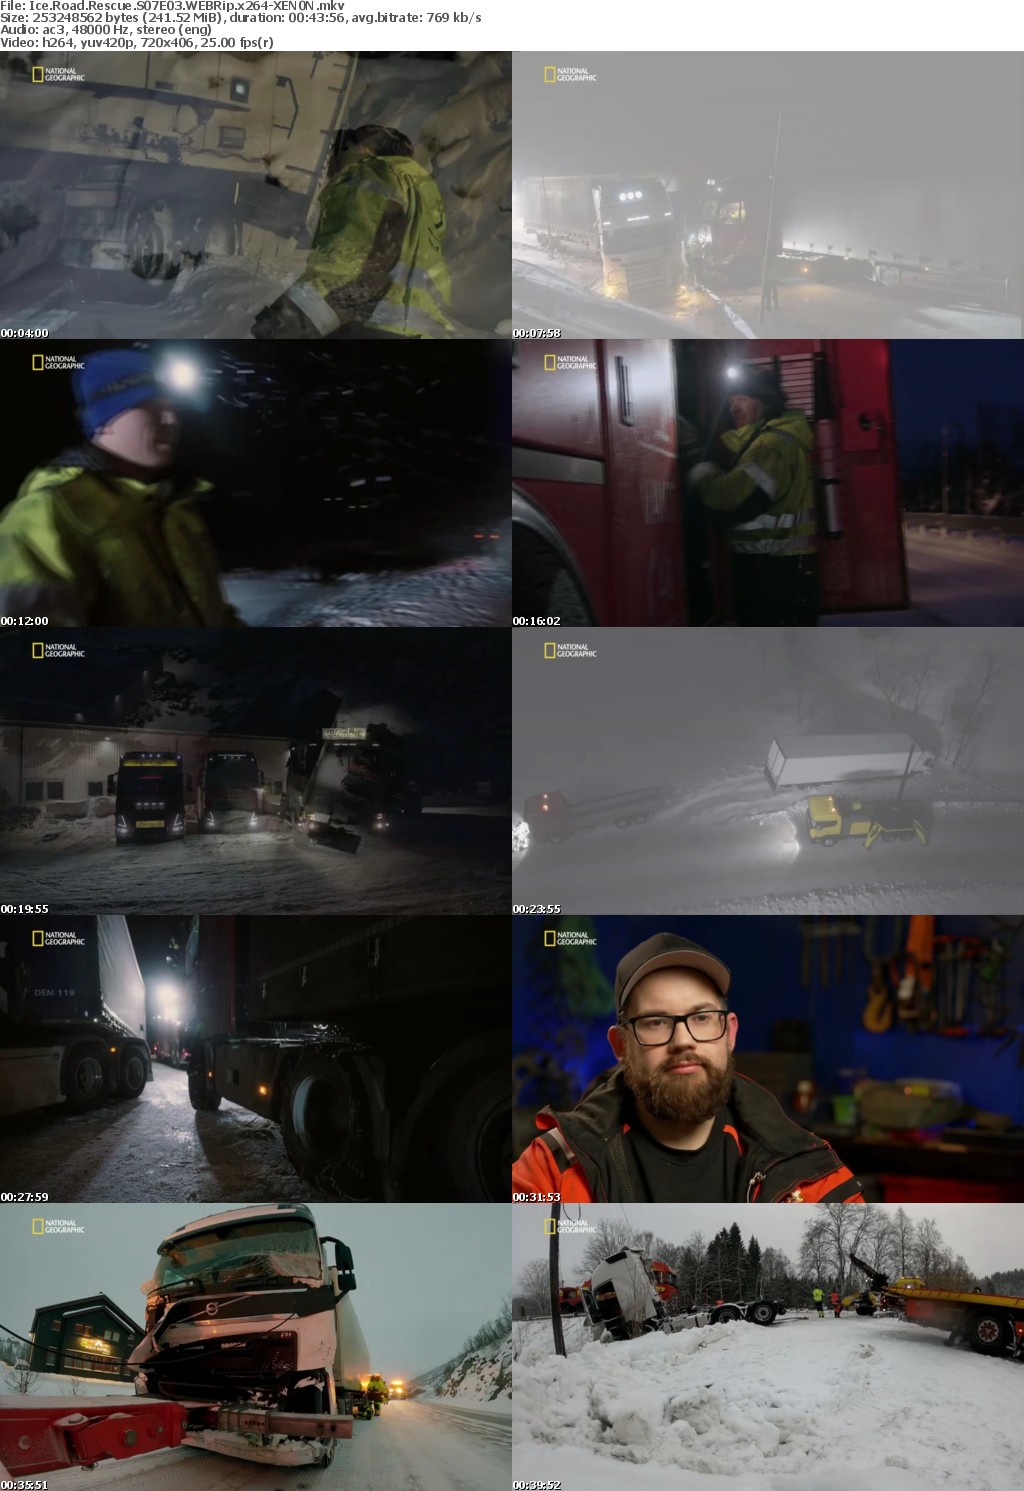 Ice Road Rescue S07E03 WEBRip x264-XEN0N